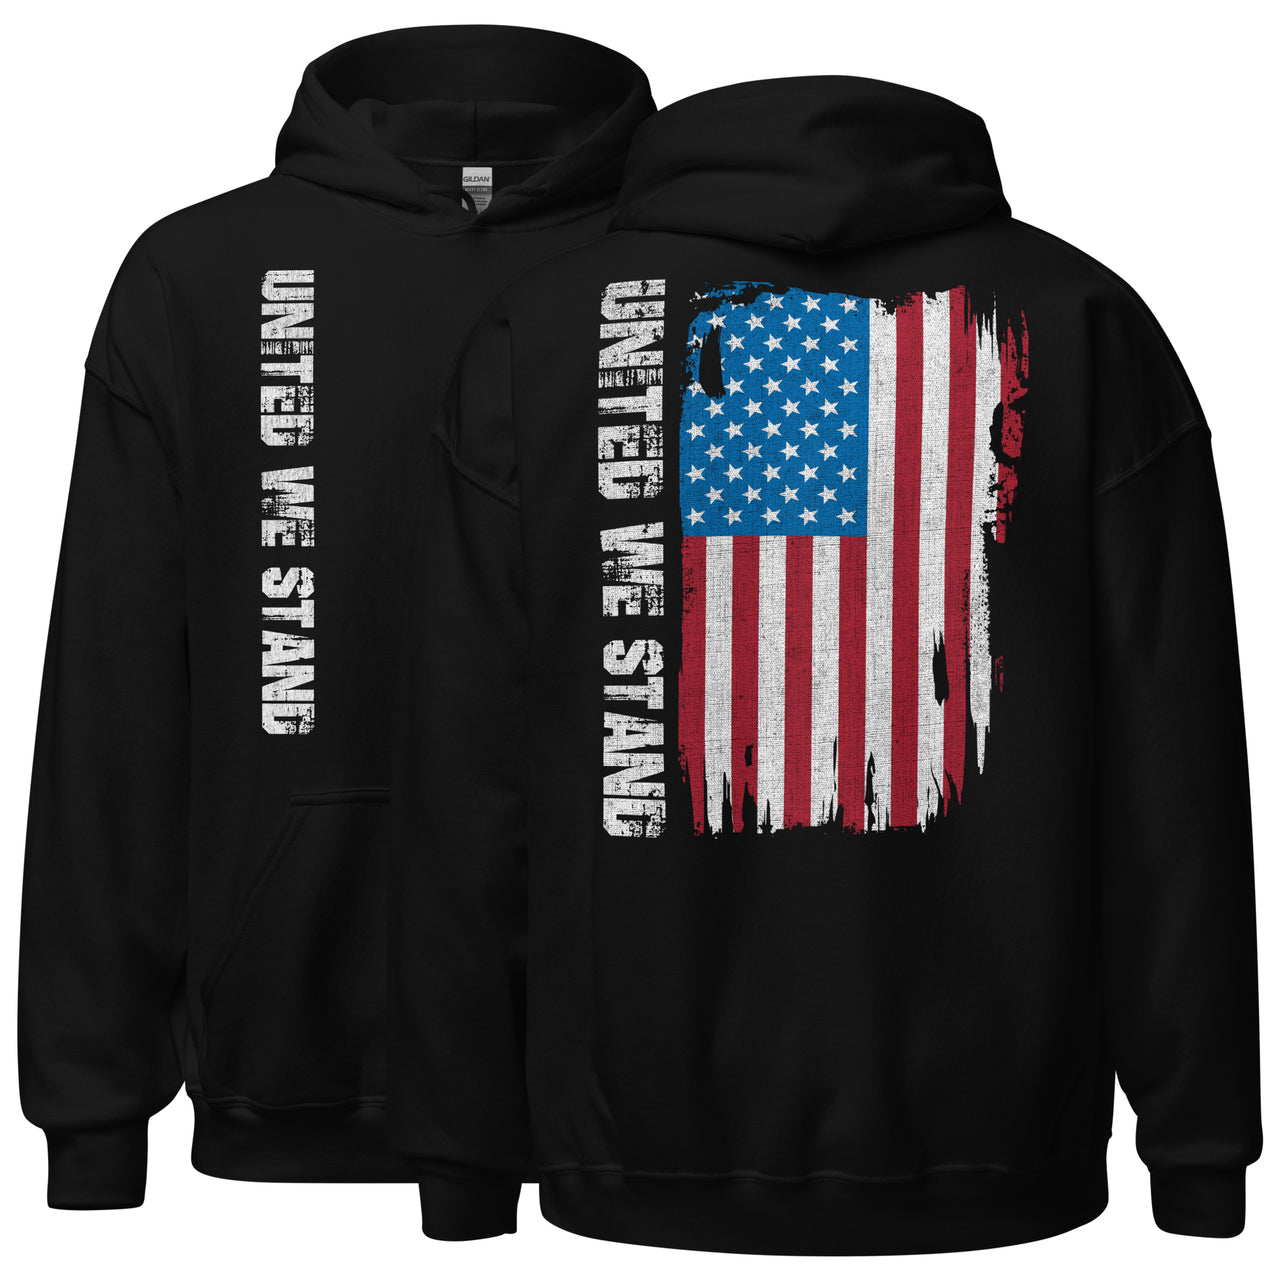 United We Stand Full Color American Flag Hoodie Sweatshirt in black